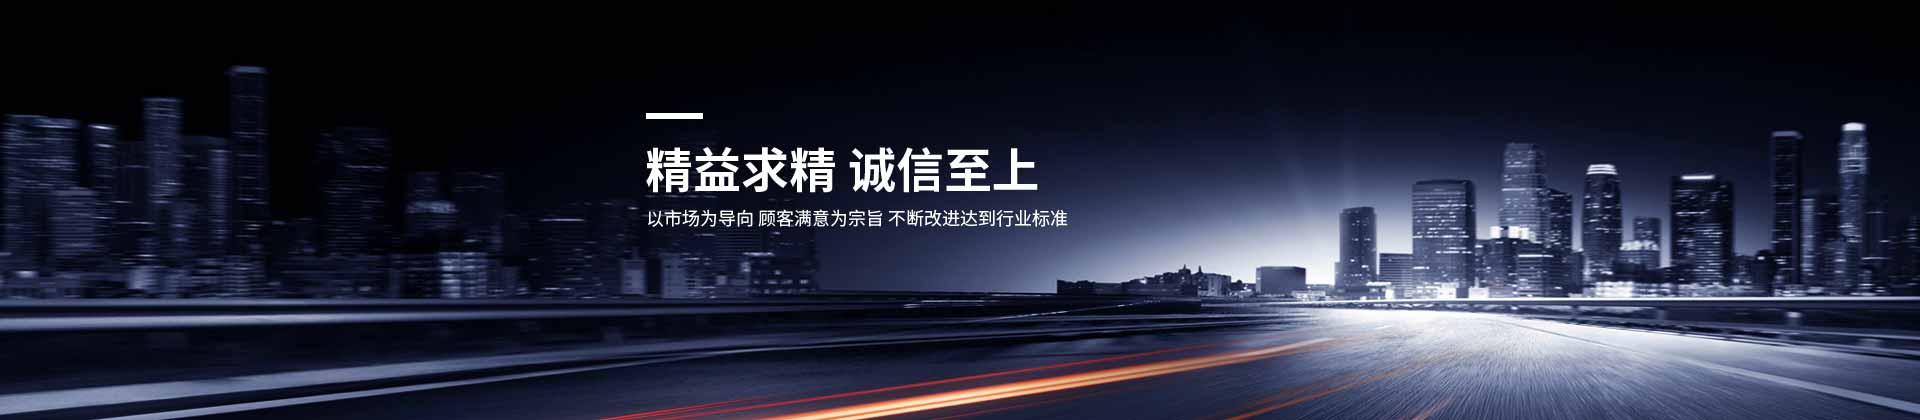 乐动ld体育-(中国)官方网站IOS/安卓通用版/手机APP设计